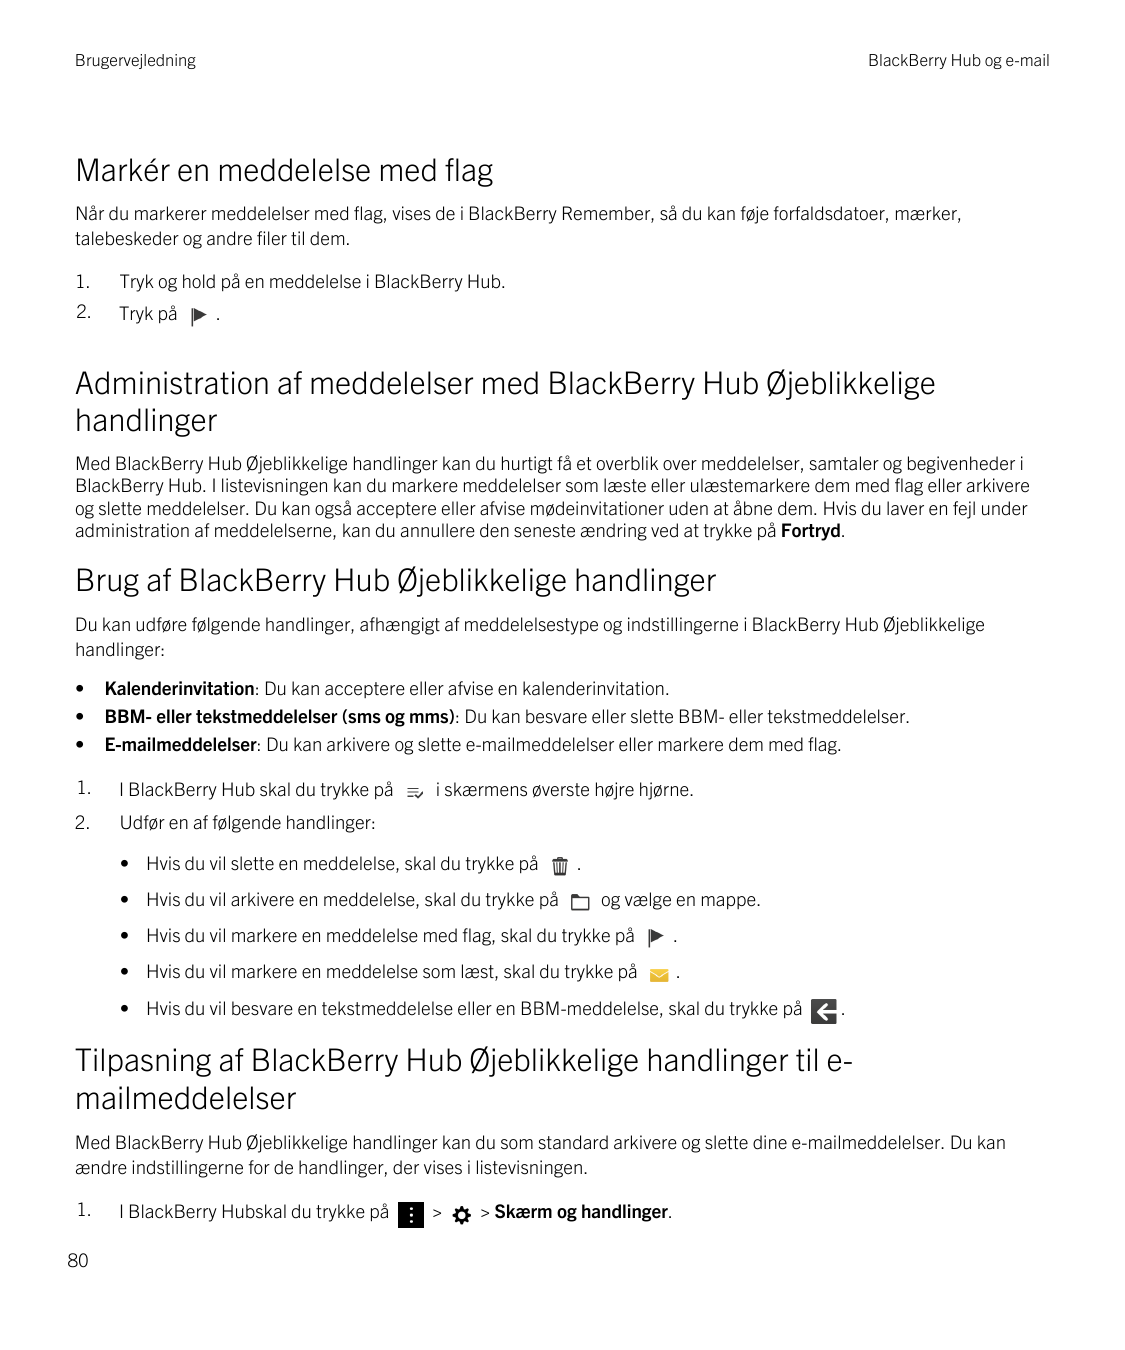 BrugervejledningBlackBerry Hub og e-mailMarkér en meddelelse med flagNår du markerer meddelelser med flag, vises de i BlackBerry